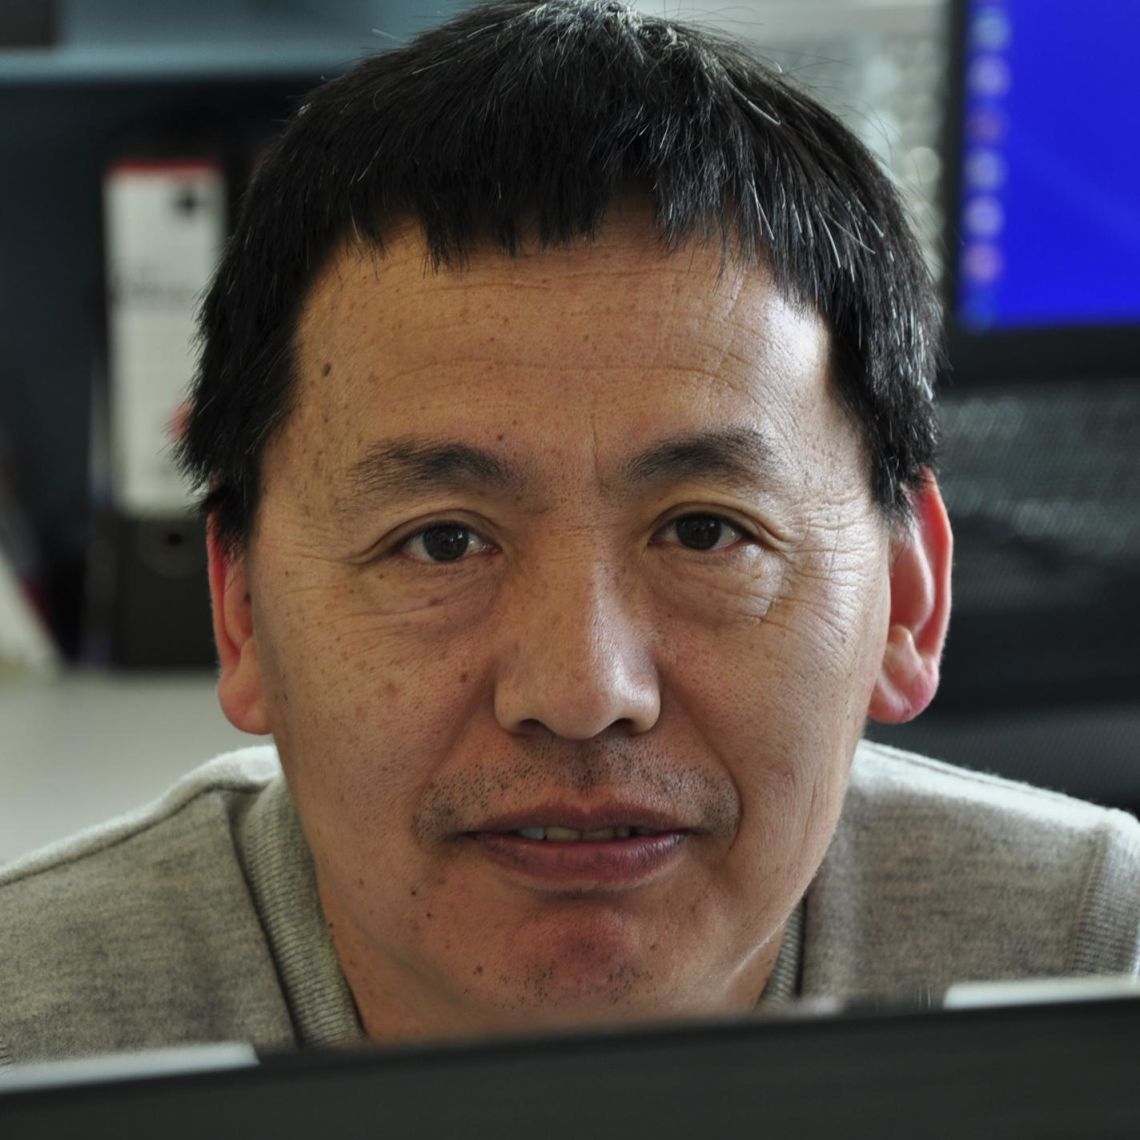 Dr Zhanru Yu